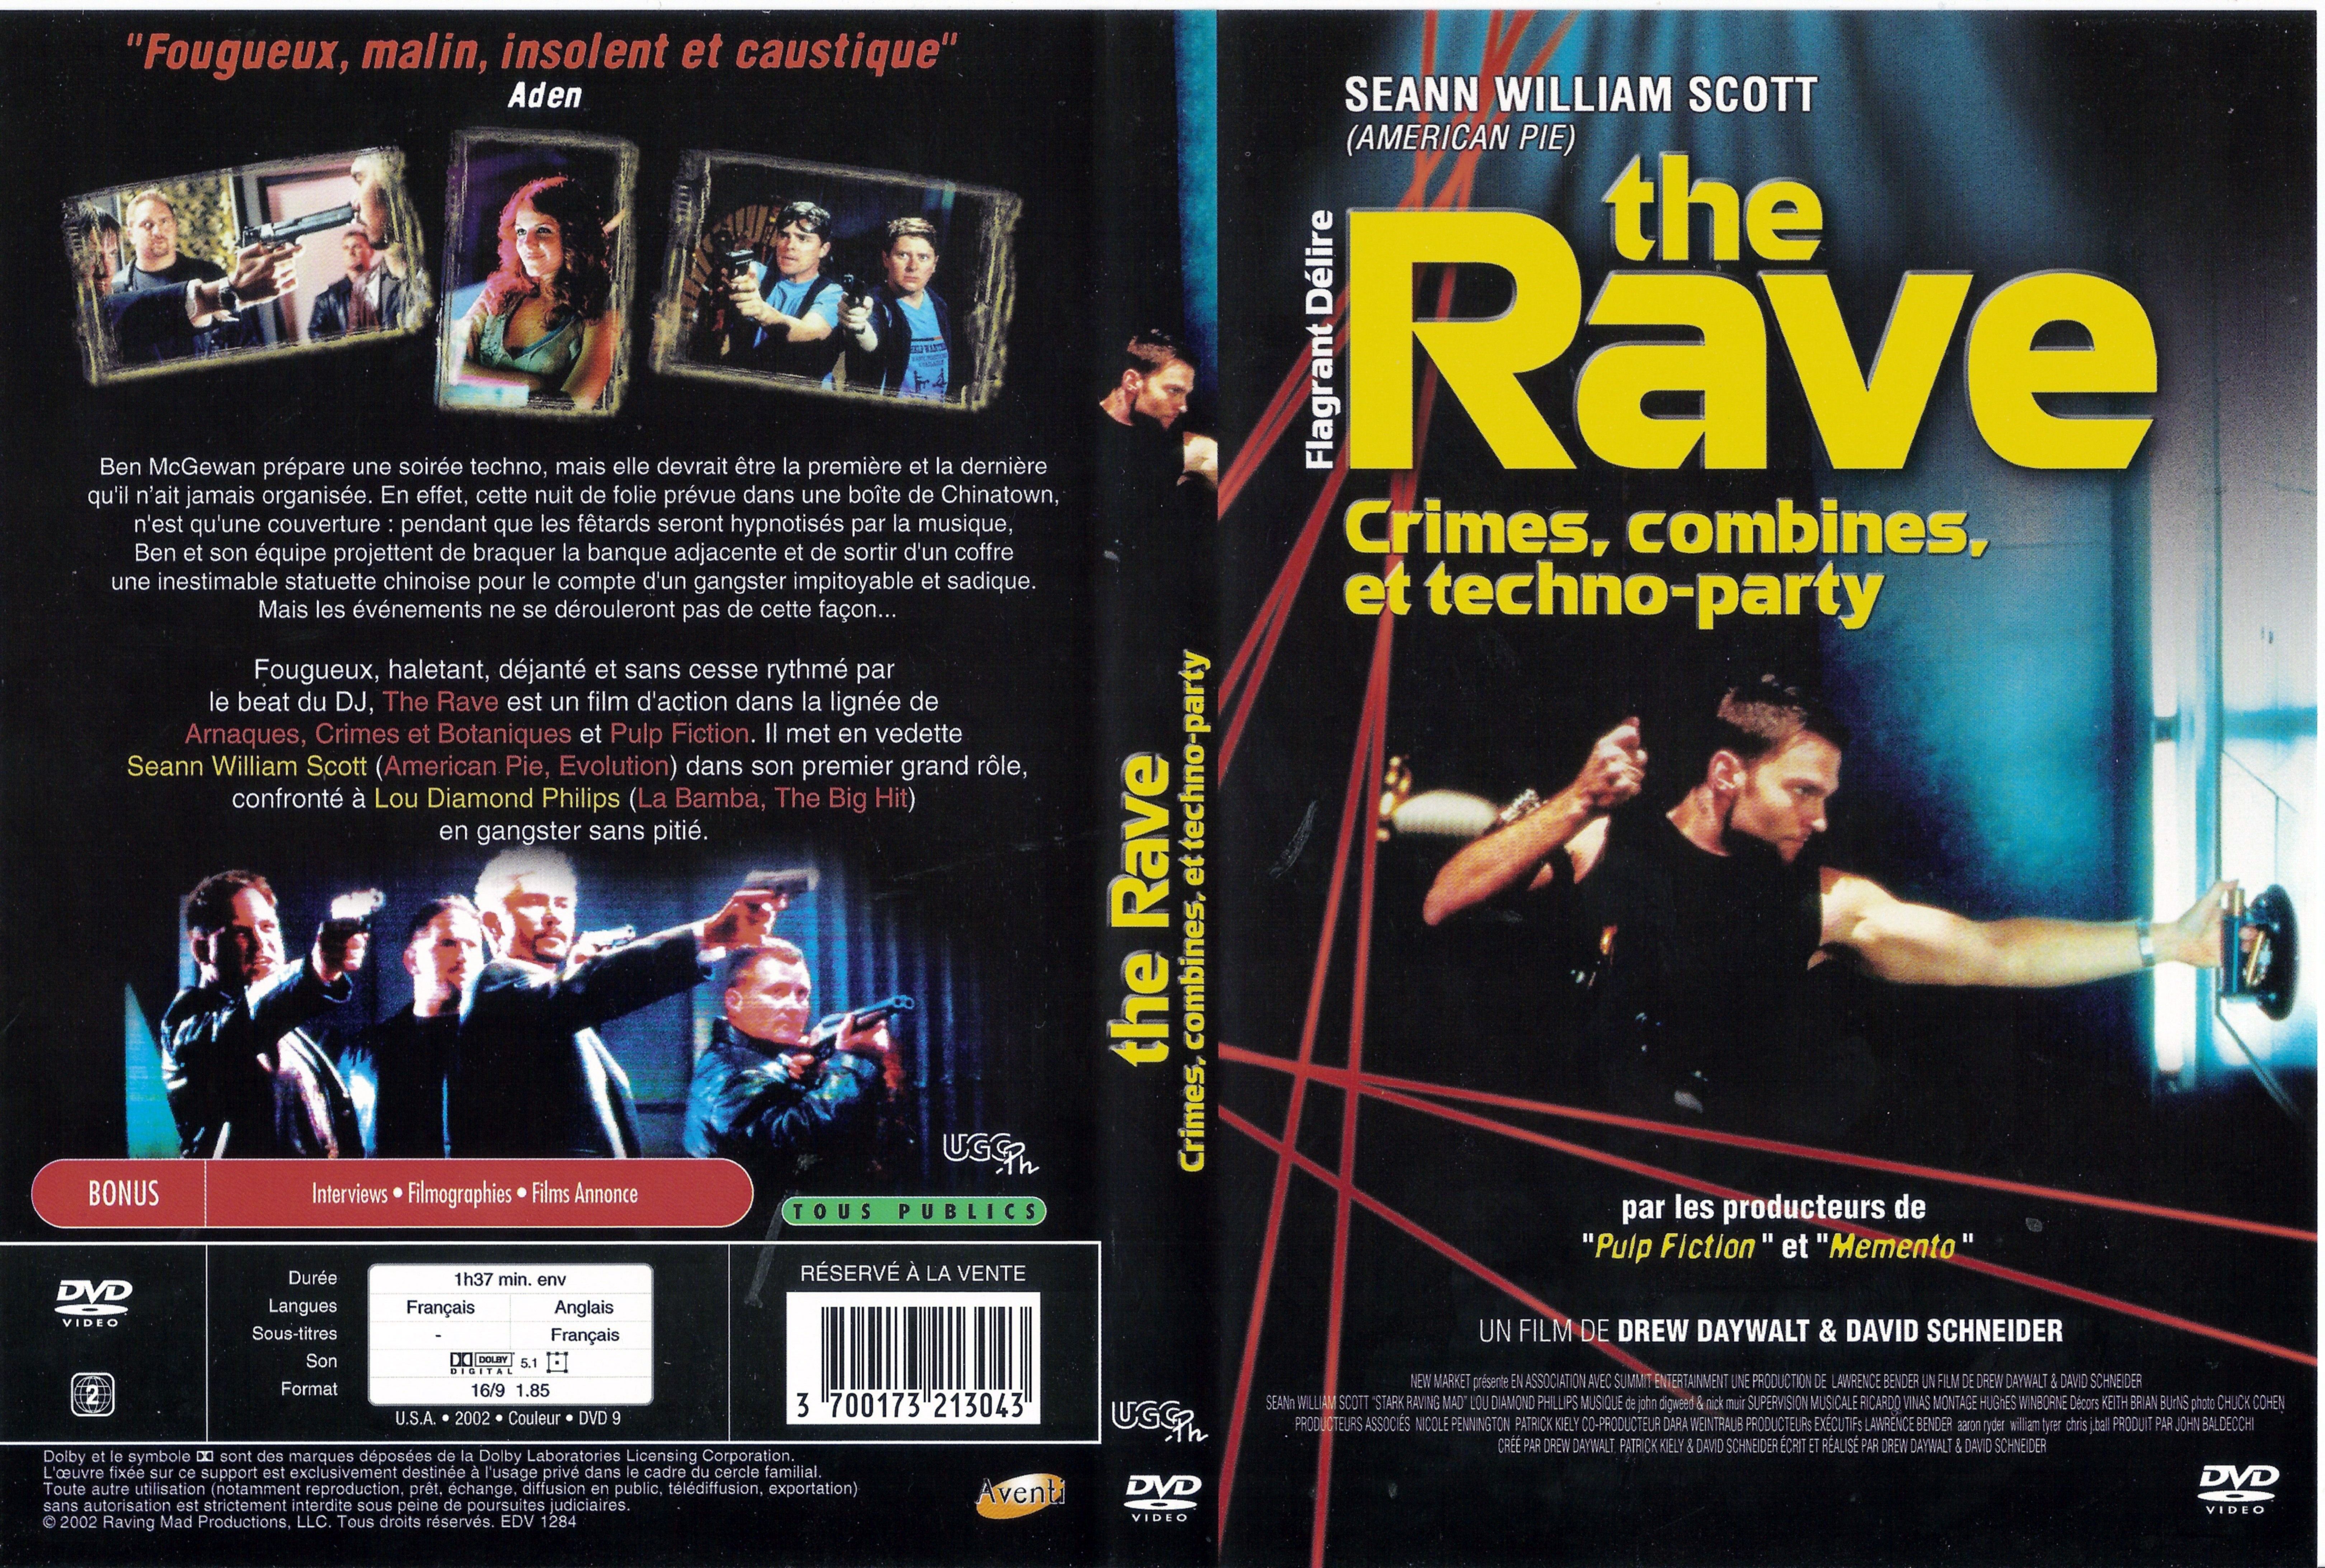 Jaquette DVD The rave v2